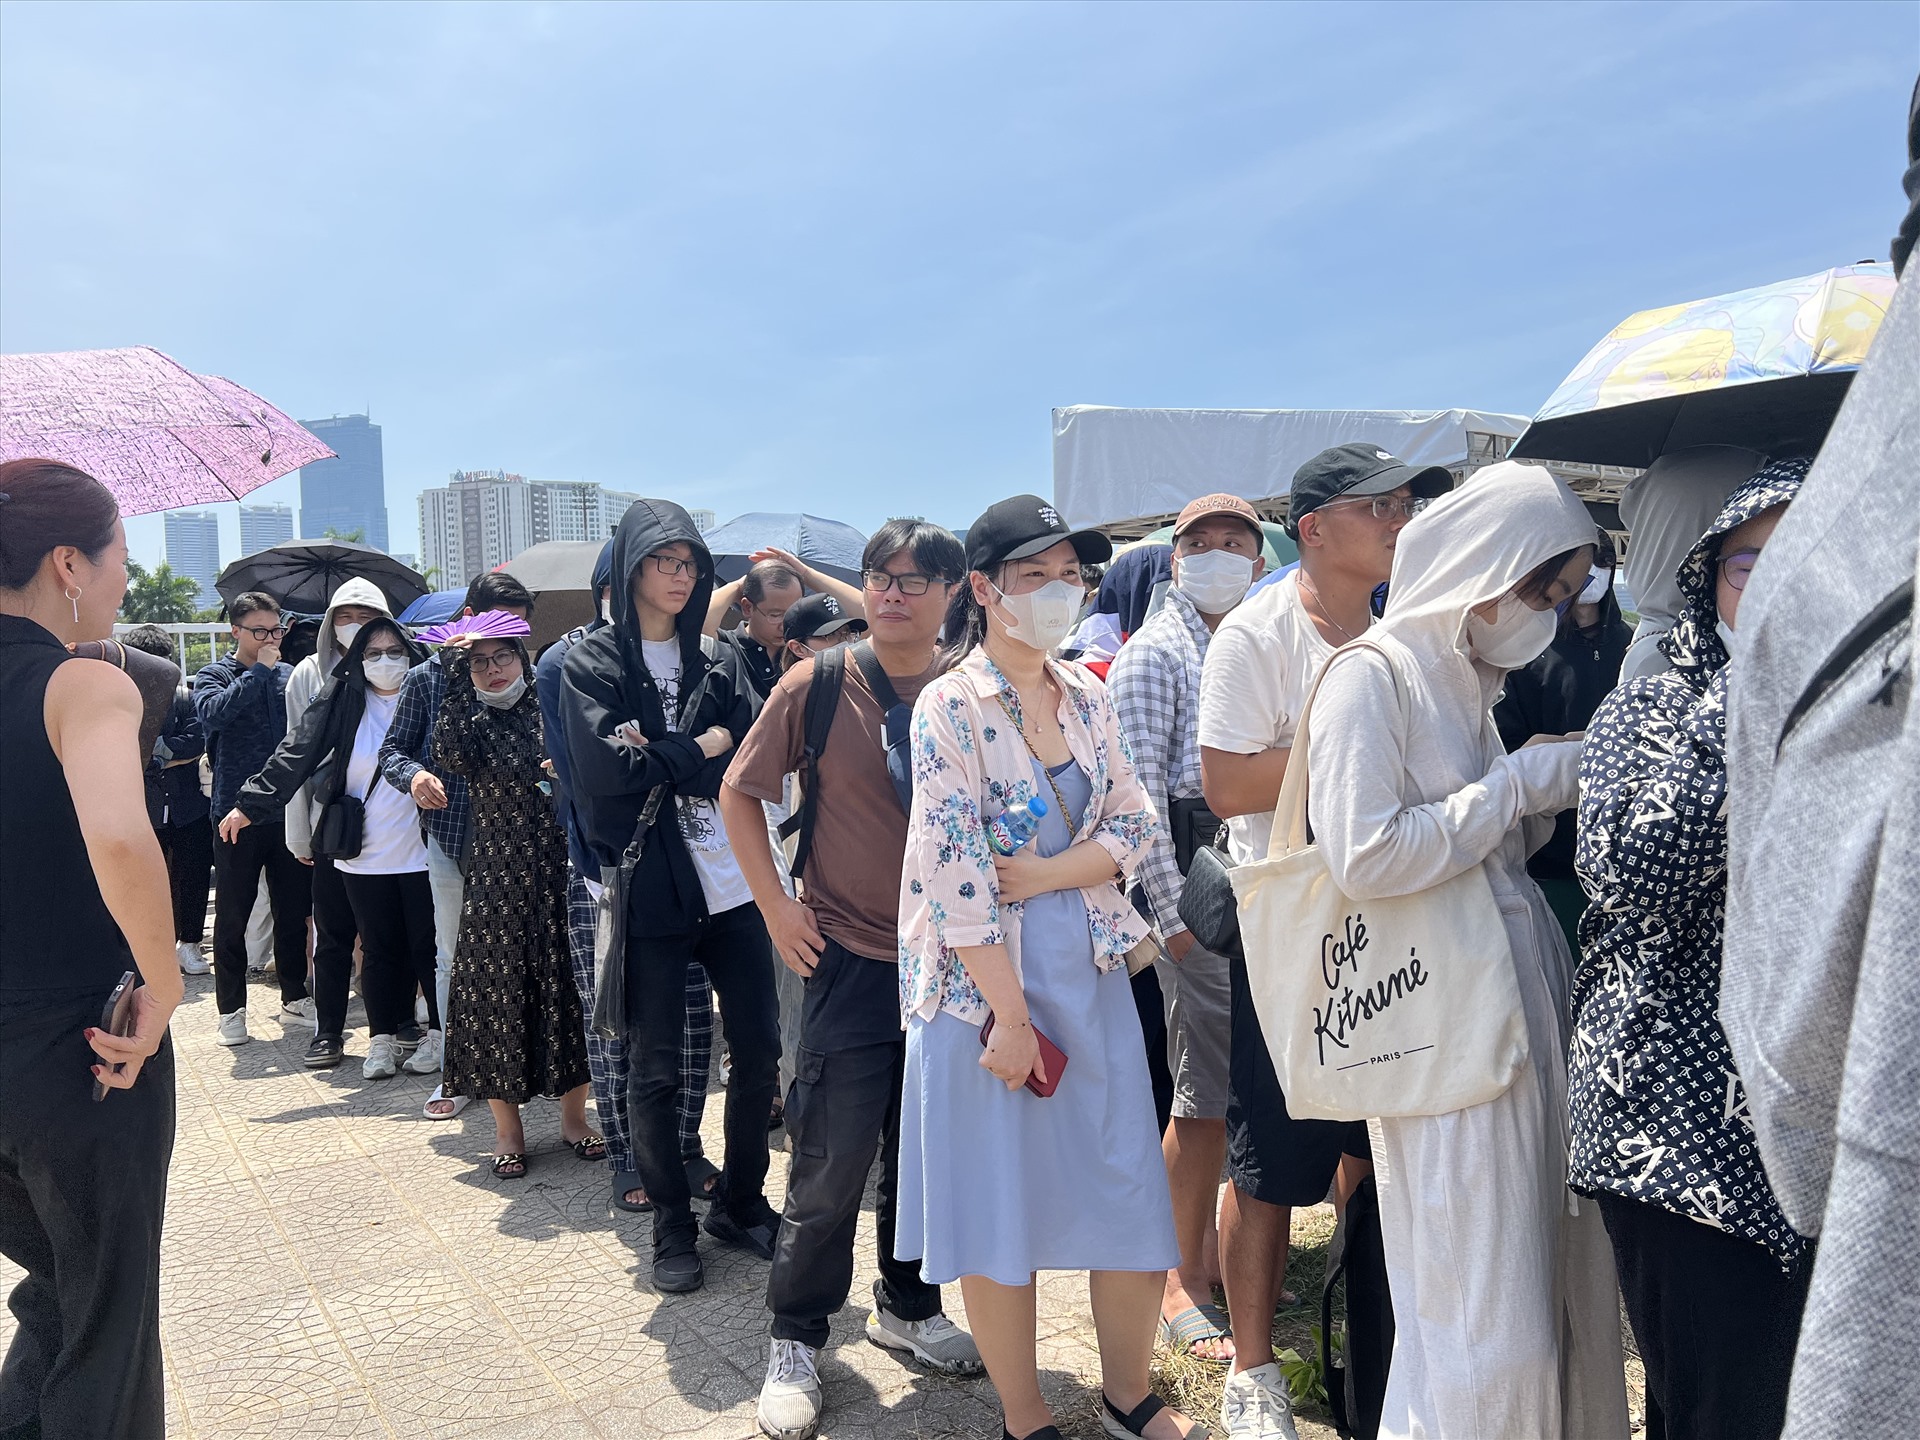 Người hâm mộ xếp hàng dài dưới thời tiết nắng gắt để đổi vòng tay cho đêm diễn của Blackpink. Ảnh: Minh Phong